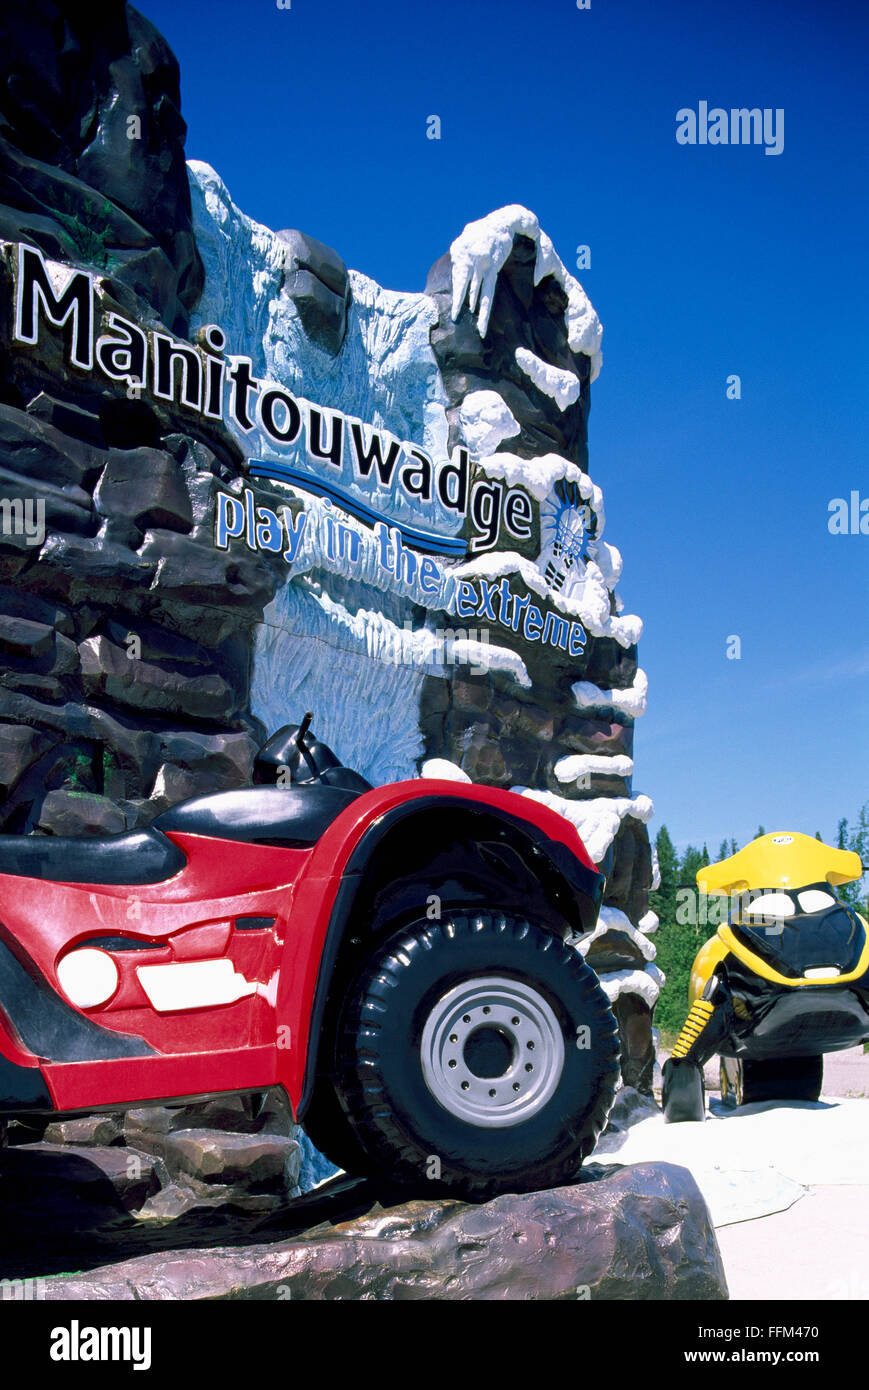 Cartel de bienvenida a la ciudad de Manitouwadge, Ontario, Canadá - ATV y Skidoo escaparate Local actividades recreativas de verano e invierno Foto de stock